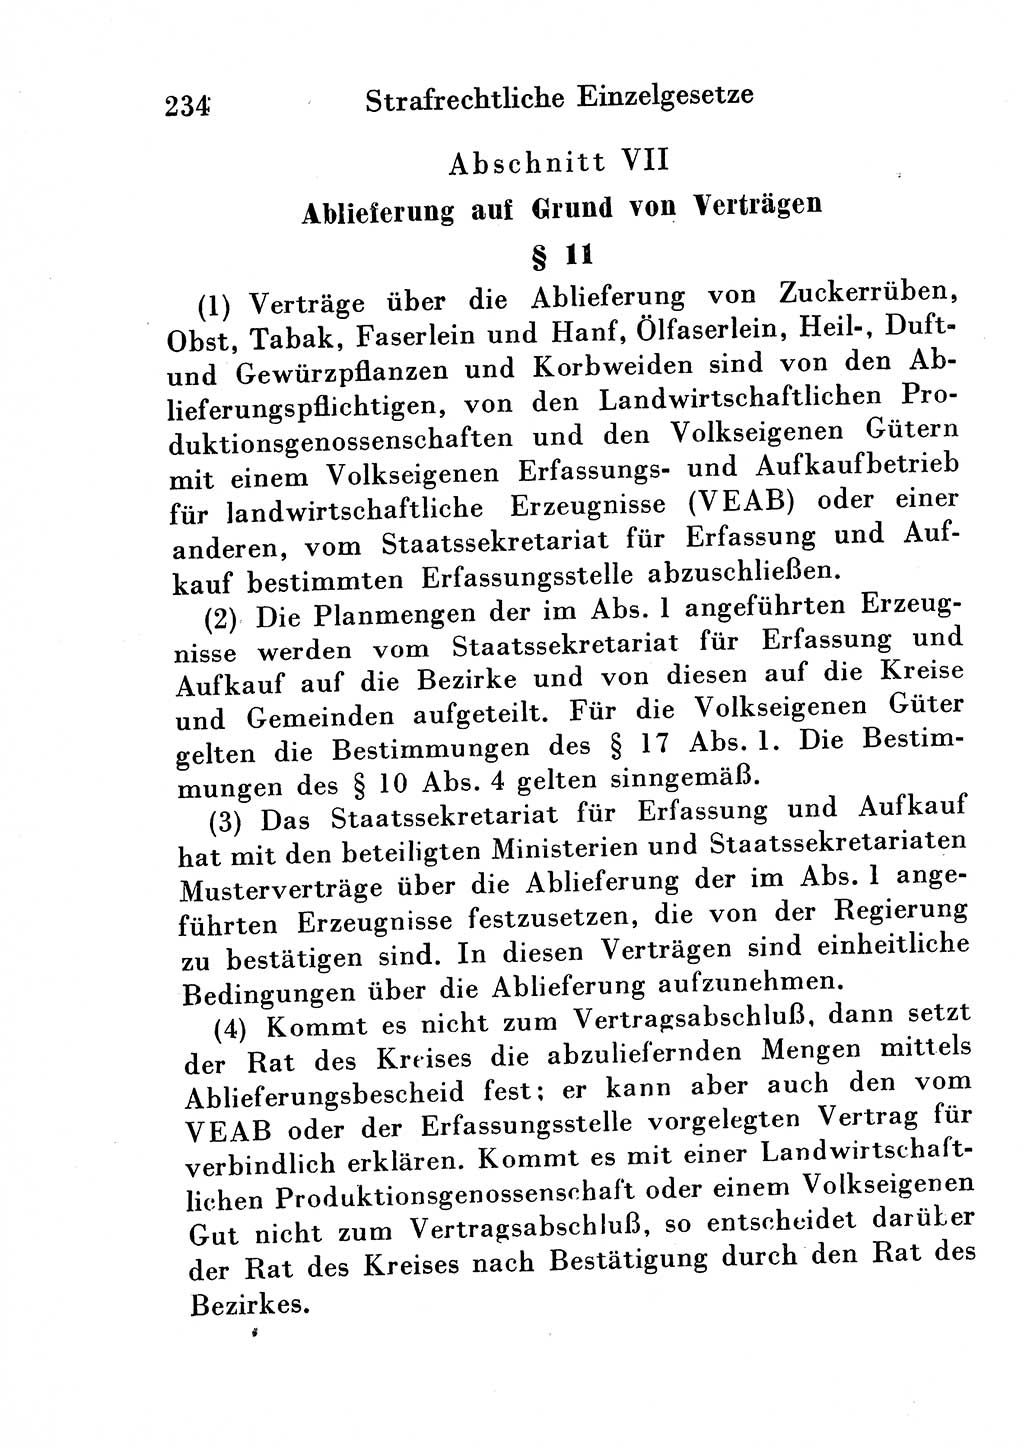 Strafgesetzbuch (StGB) und andere Strafgesetze [Deutsche Demokratische Republik (DDR)] 1954, Seite 234 (StGB Strafges. DDR 1954, S. 234)